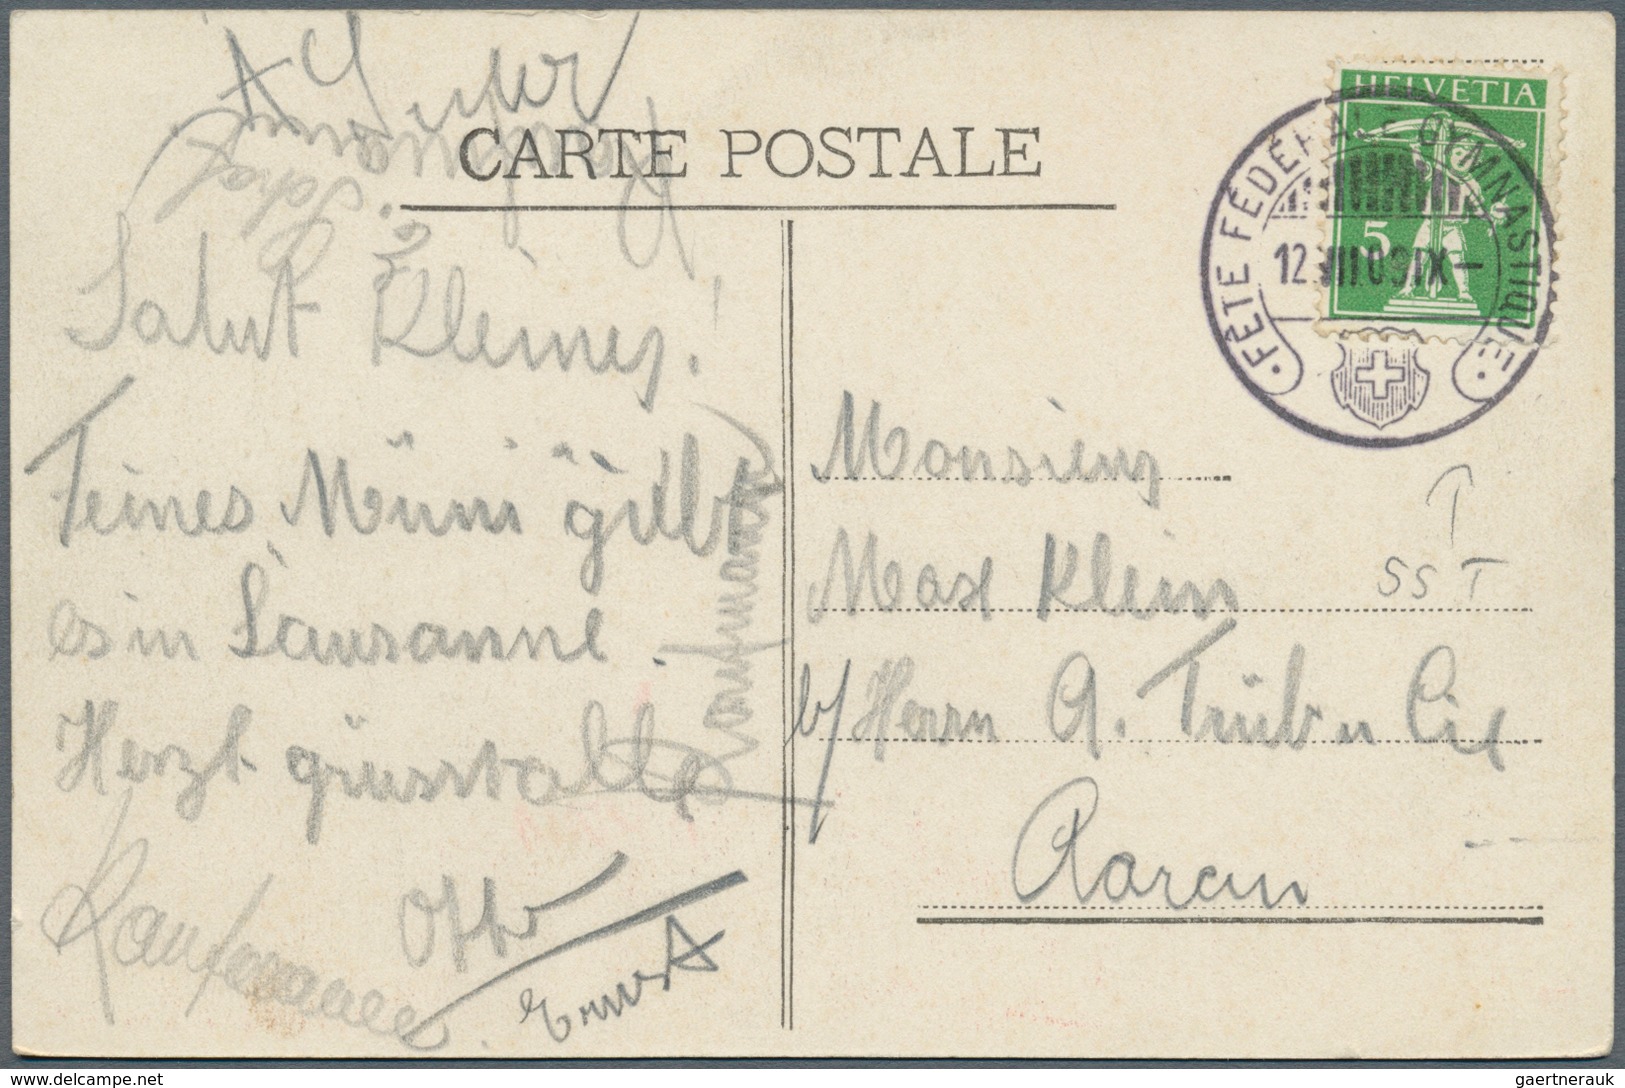 Schweiz: 1907-2000 ca.: Sehr umfangreicher und vielfältiger Bestand von rund 5000 Briefen, Postkarte